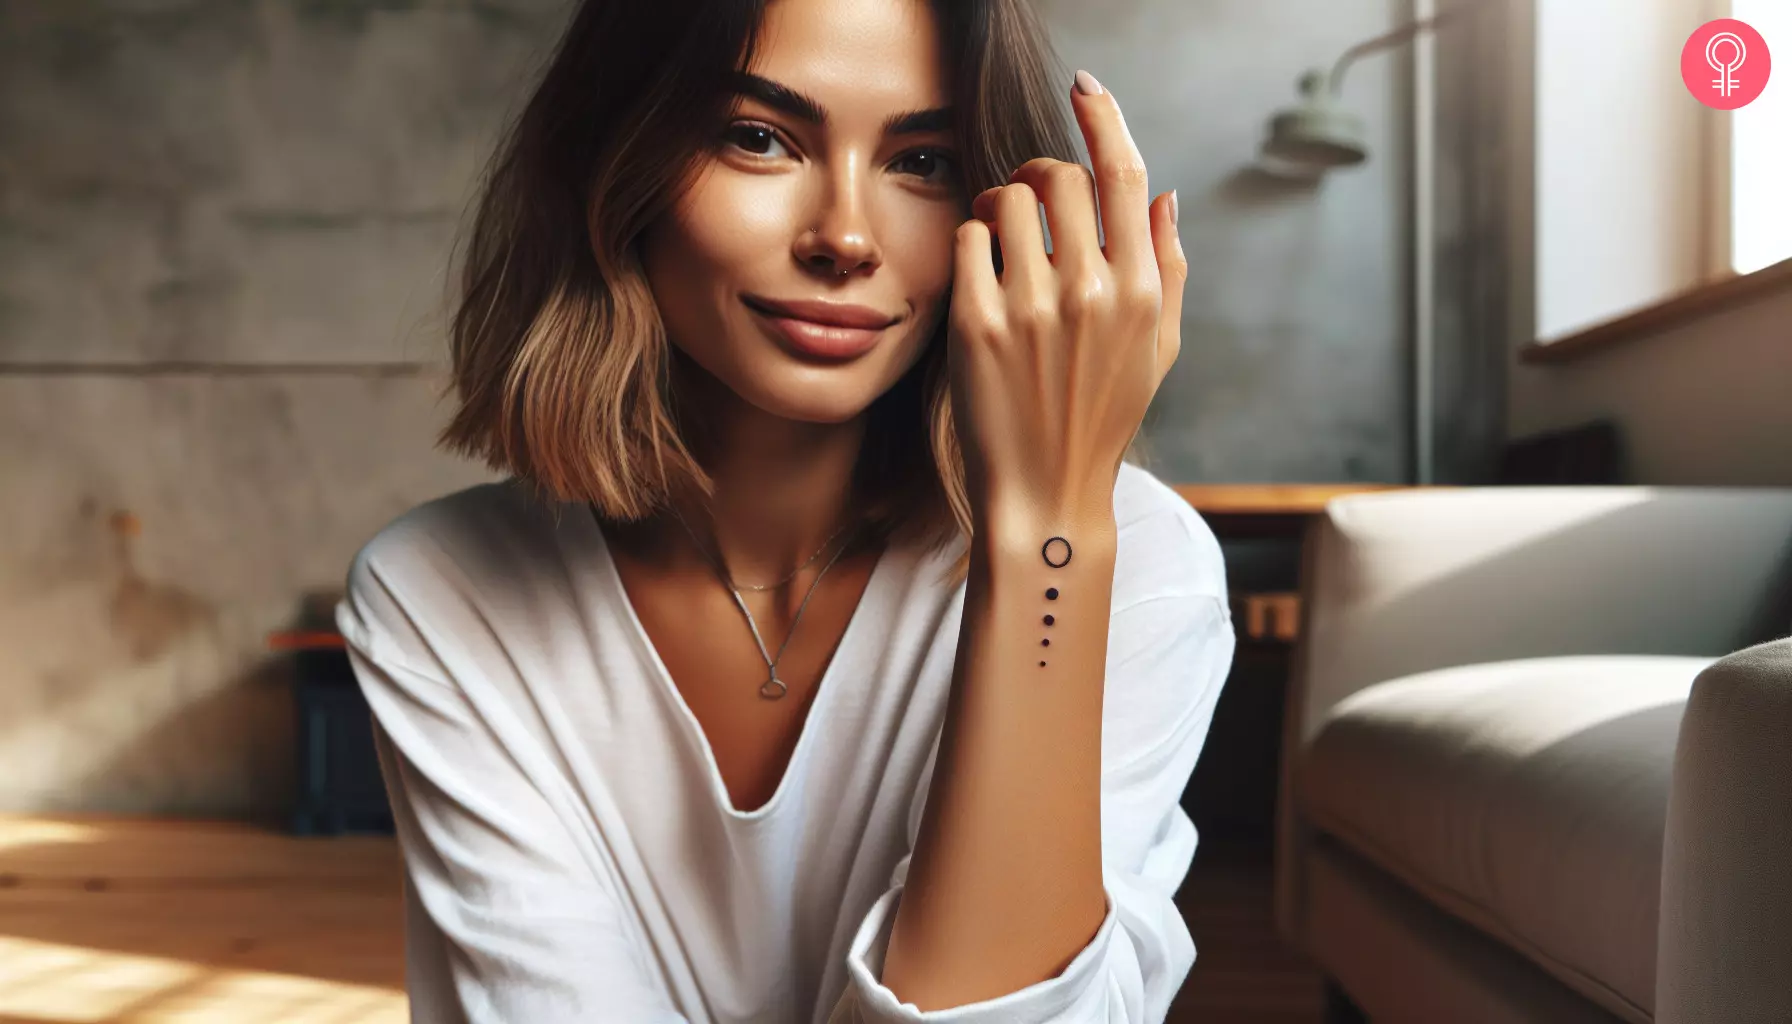 A Mayan earth symbol tattoo on a woman’s wrist